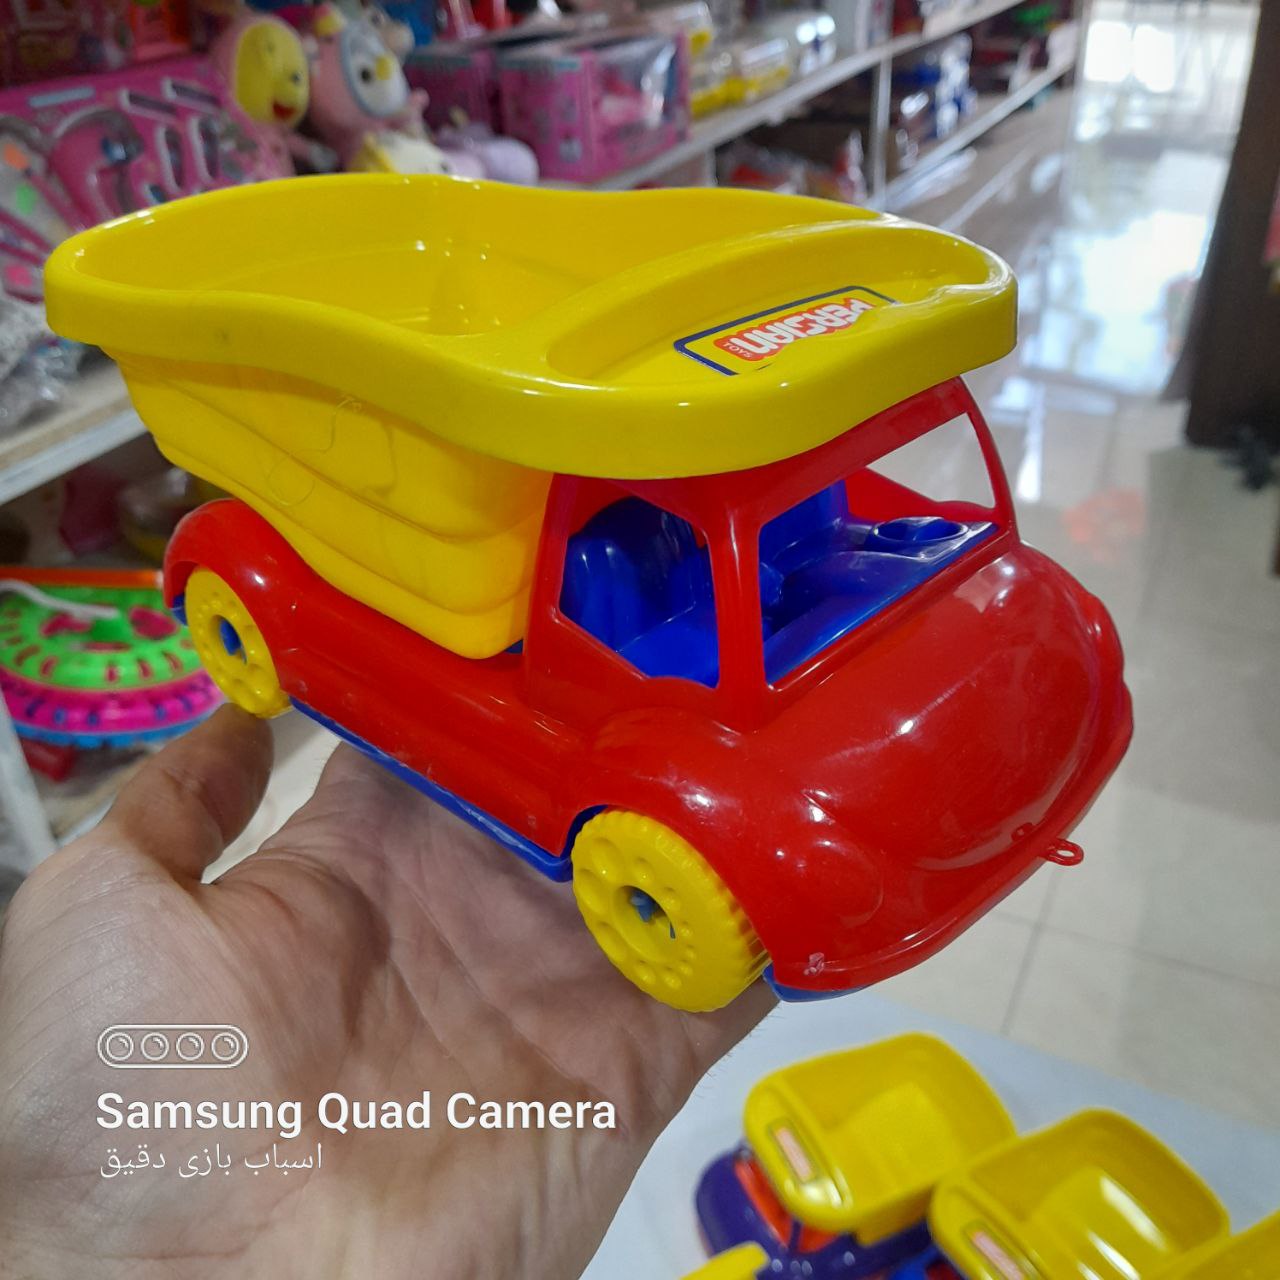   خرید اسباب بازی کامیون  به قیمت بسیار مناسب 